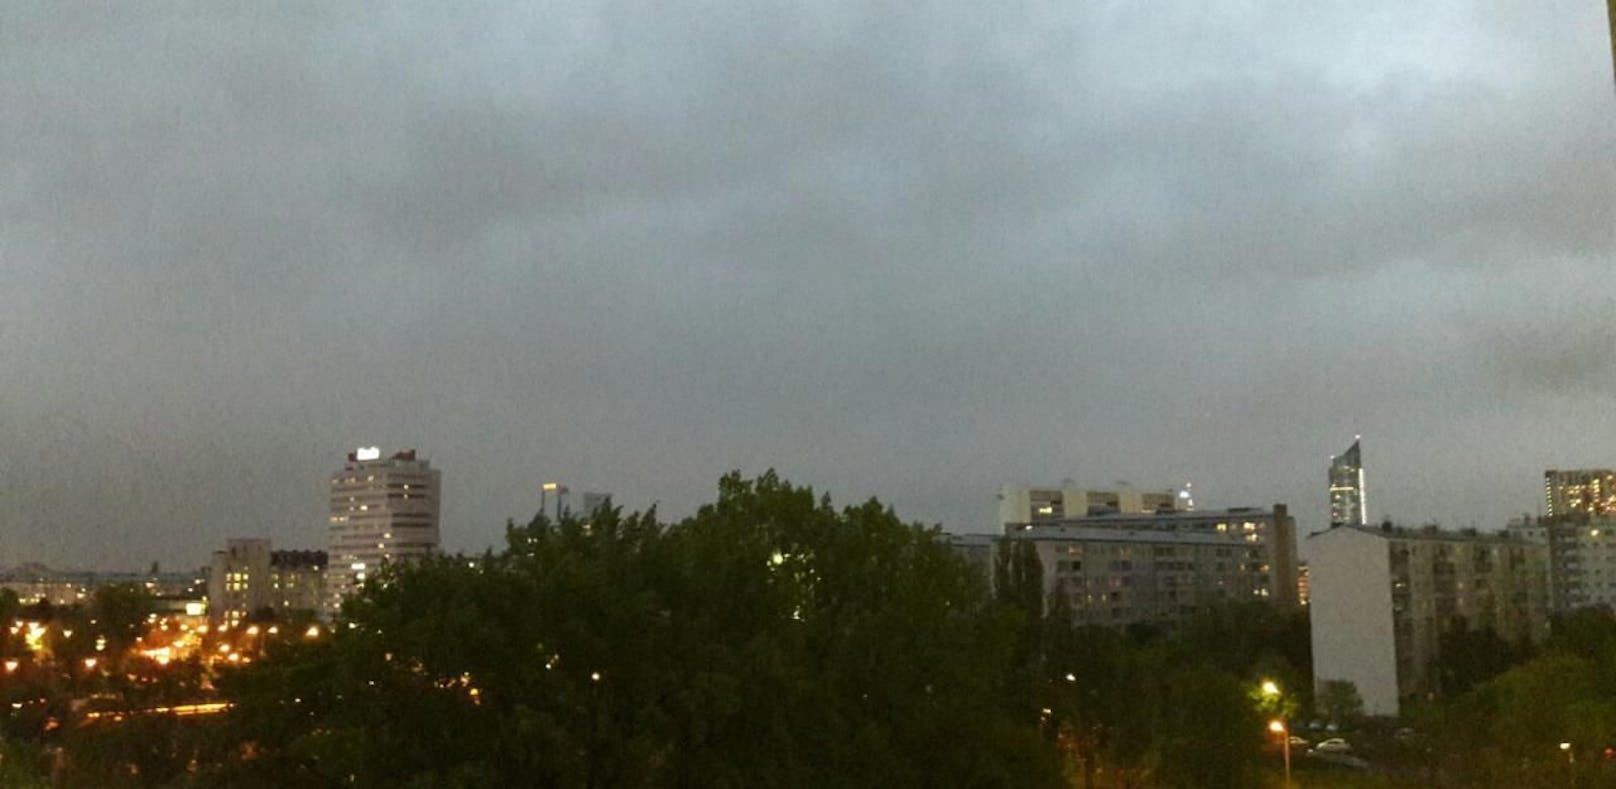 In Wien kam es am Samstag zu heftigen Regenschauern